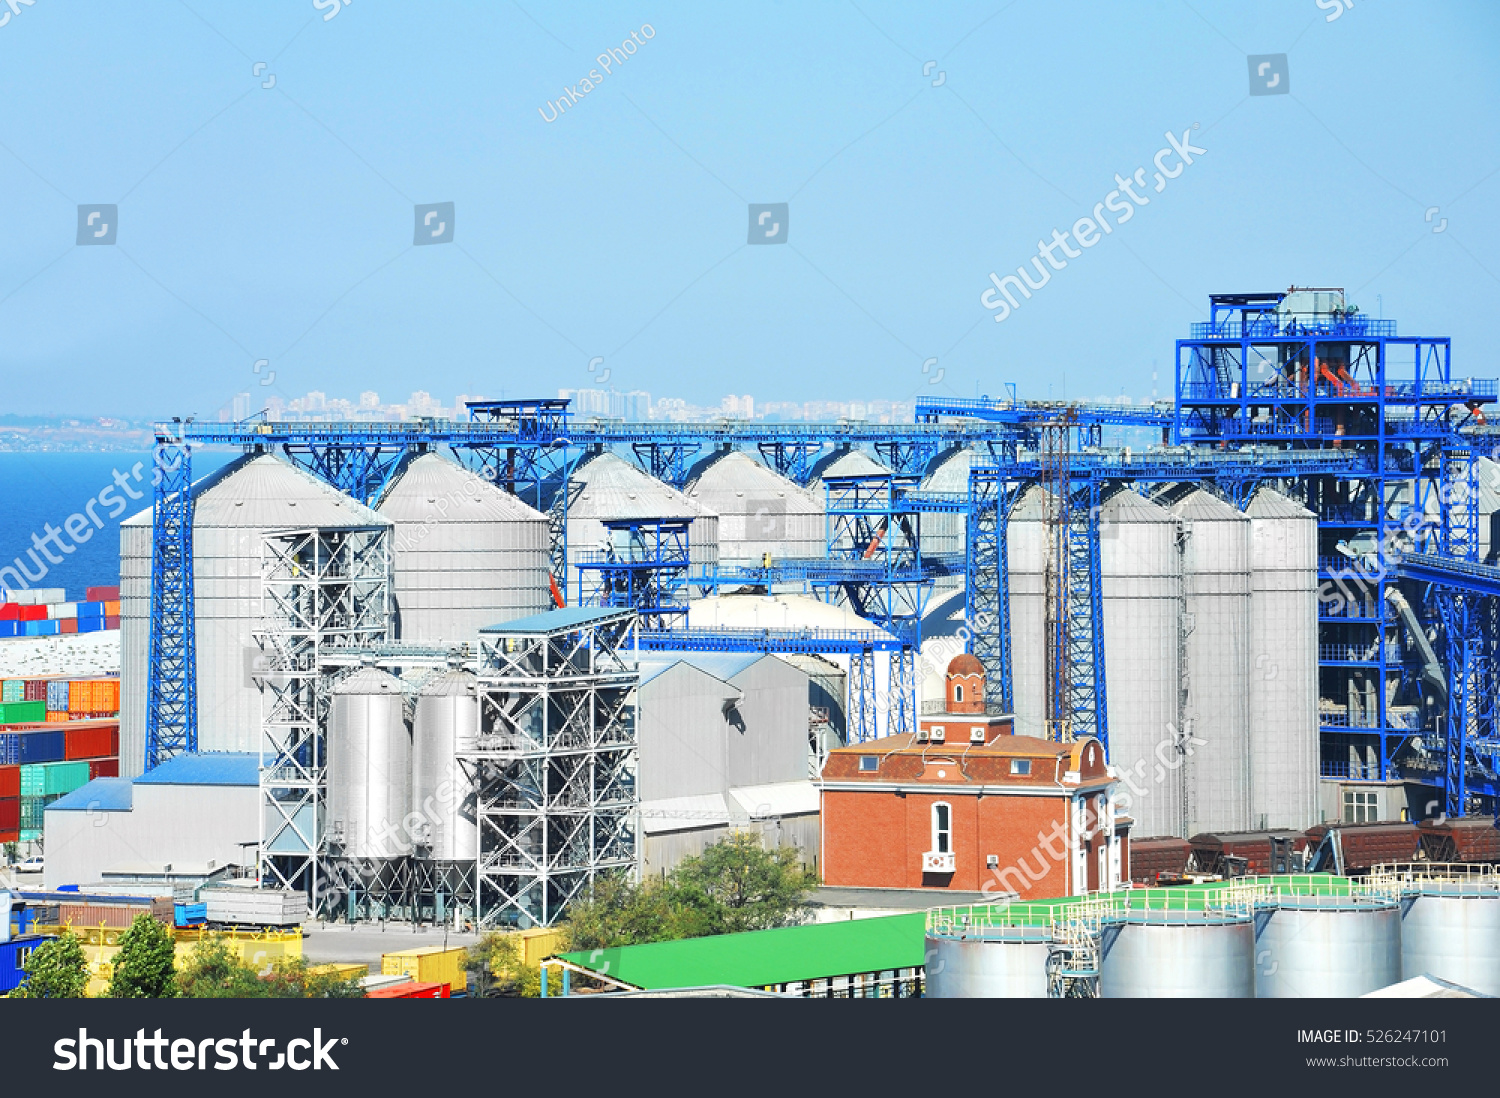 Grain dryer in the port of Odessa, Ukraine #526247101